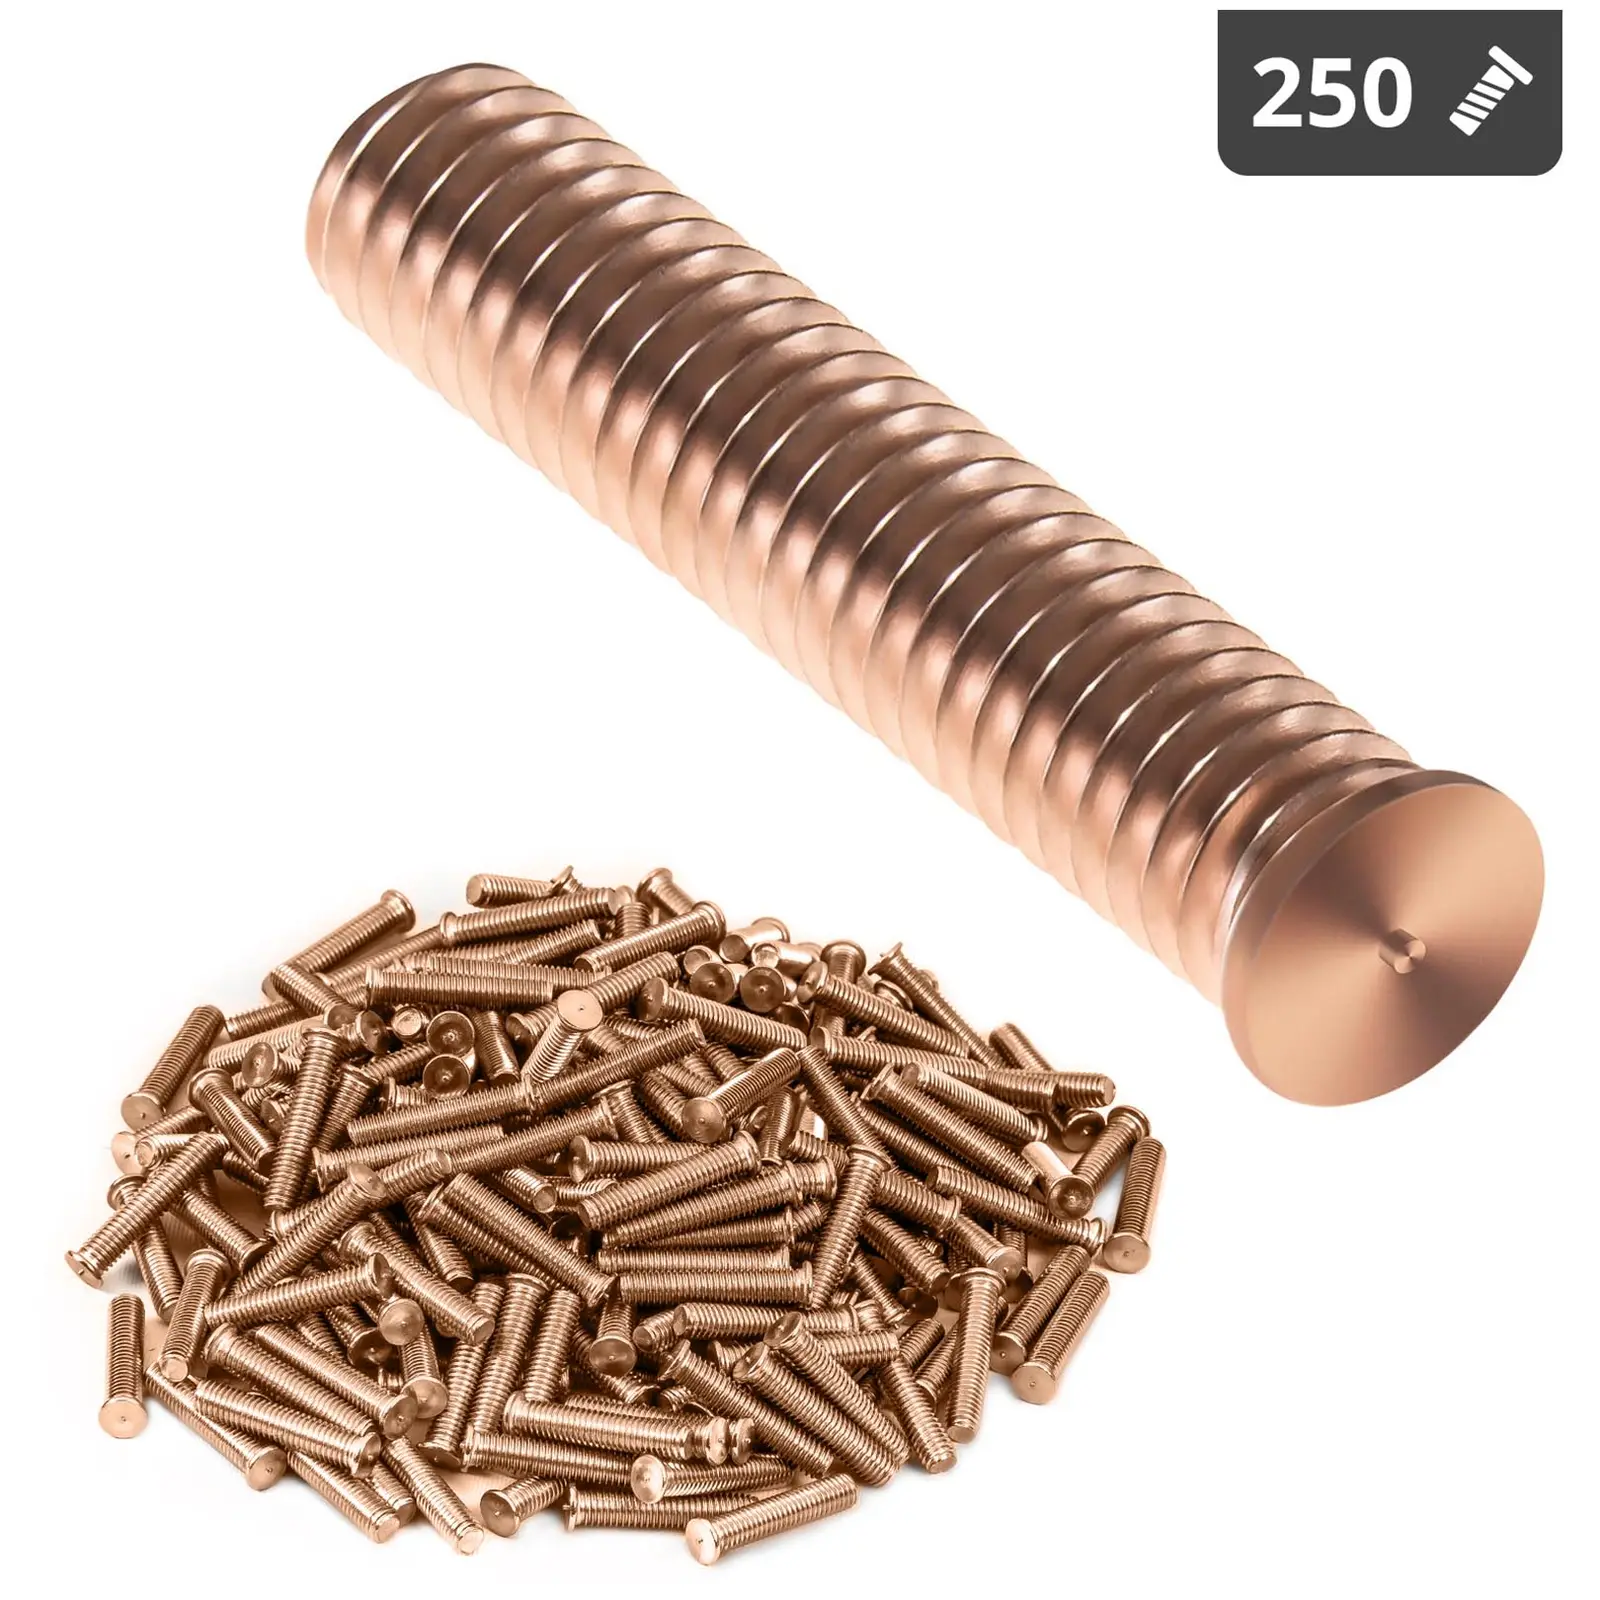 Hitsauspultit - M8 - 40 mm - teräs - 250 kpl